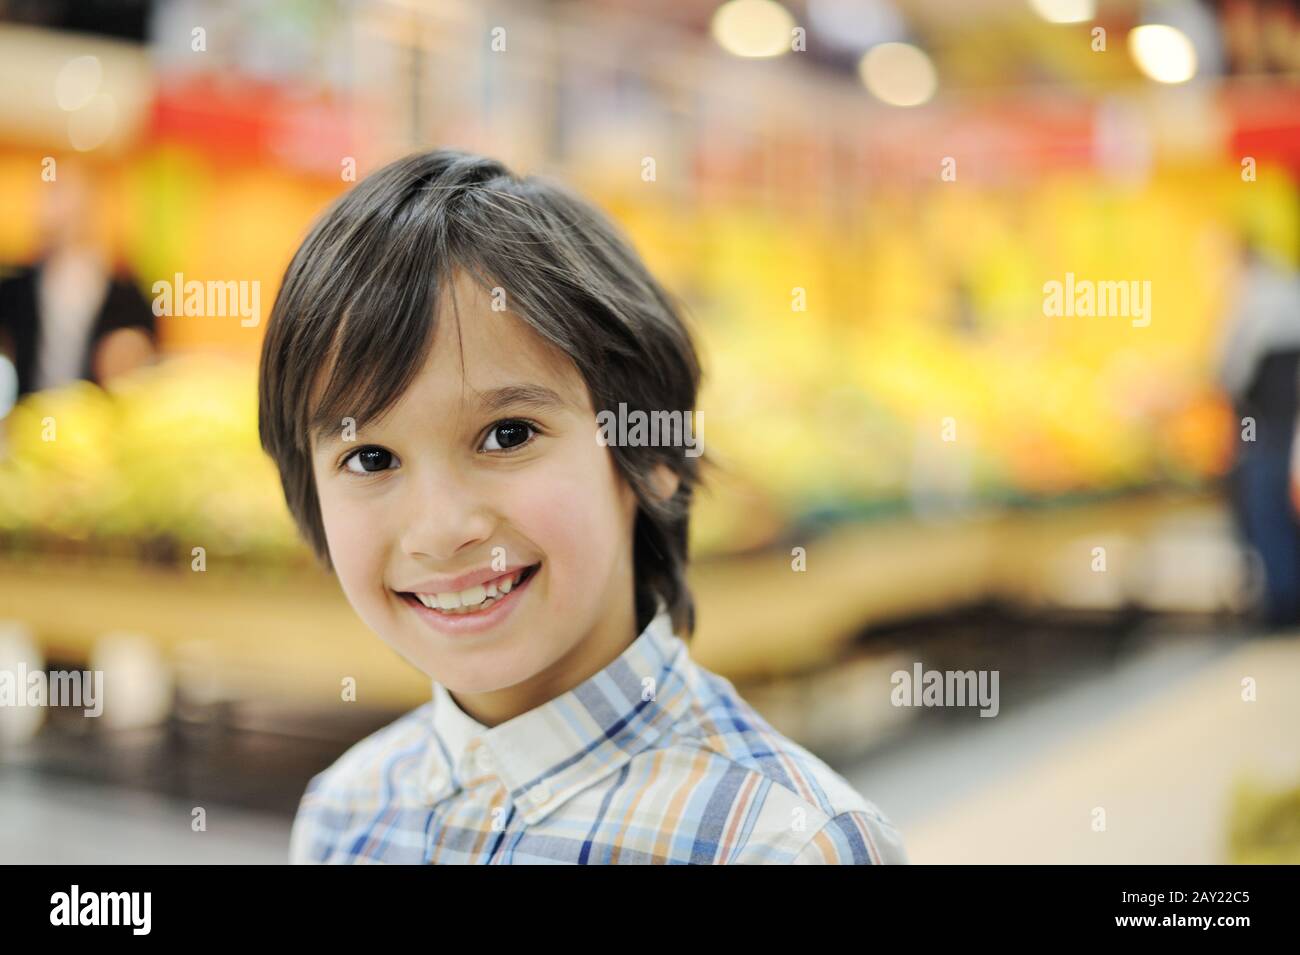 Bel ragazzo sorridente in un negozio di alimentari Foto Stock